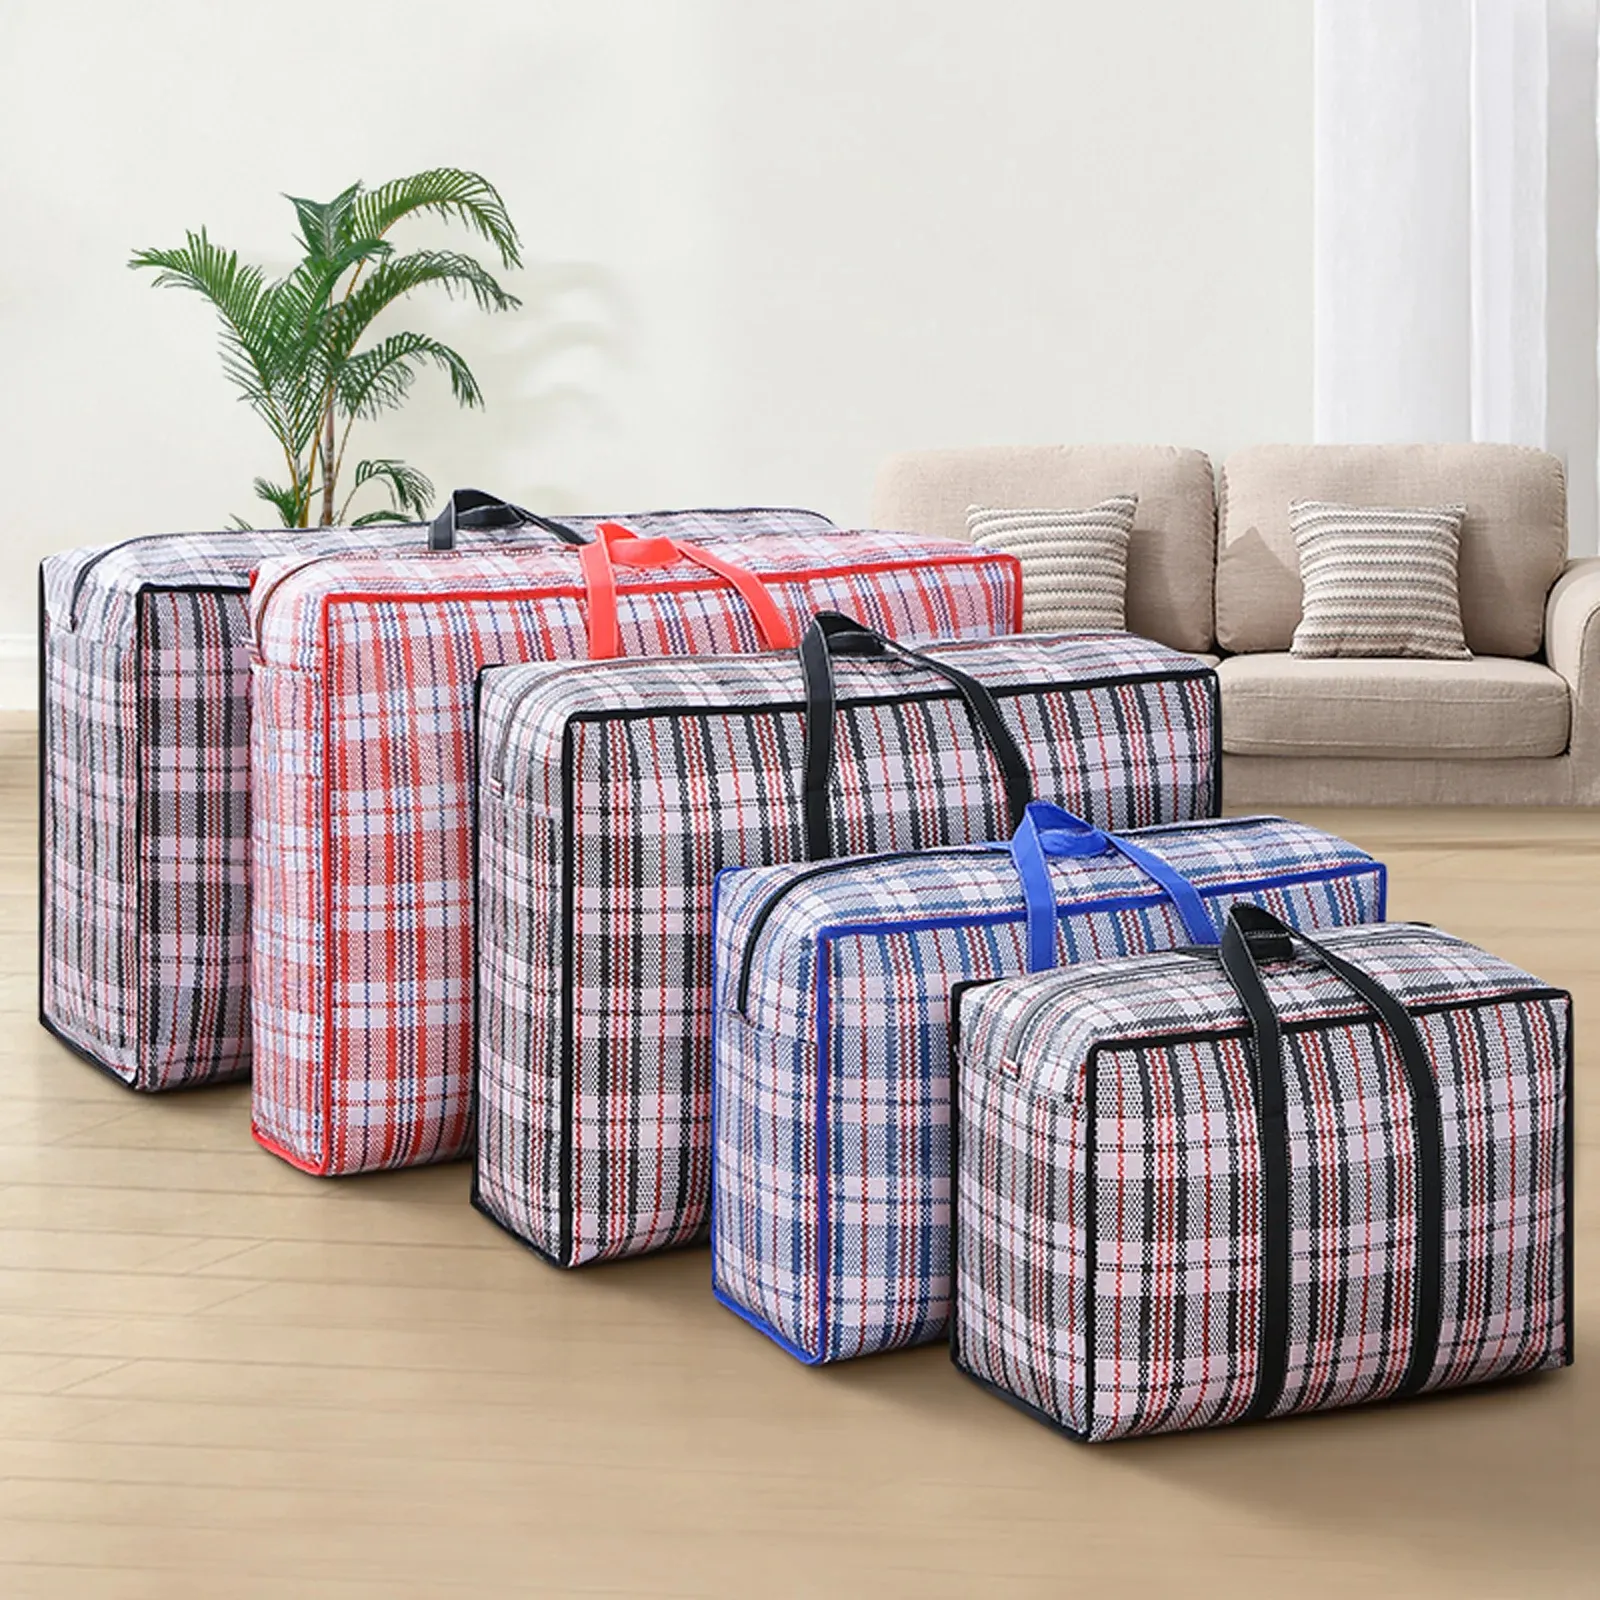 Bolsa multifuncional de tecido espessada para bagagem de viagem, colcha portátil à prova d'água de grande capacidade, sacola móvel com alça